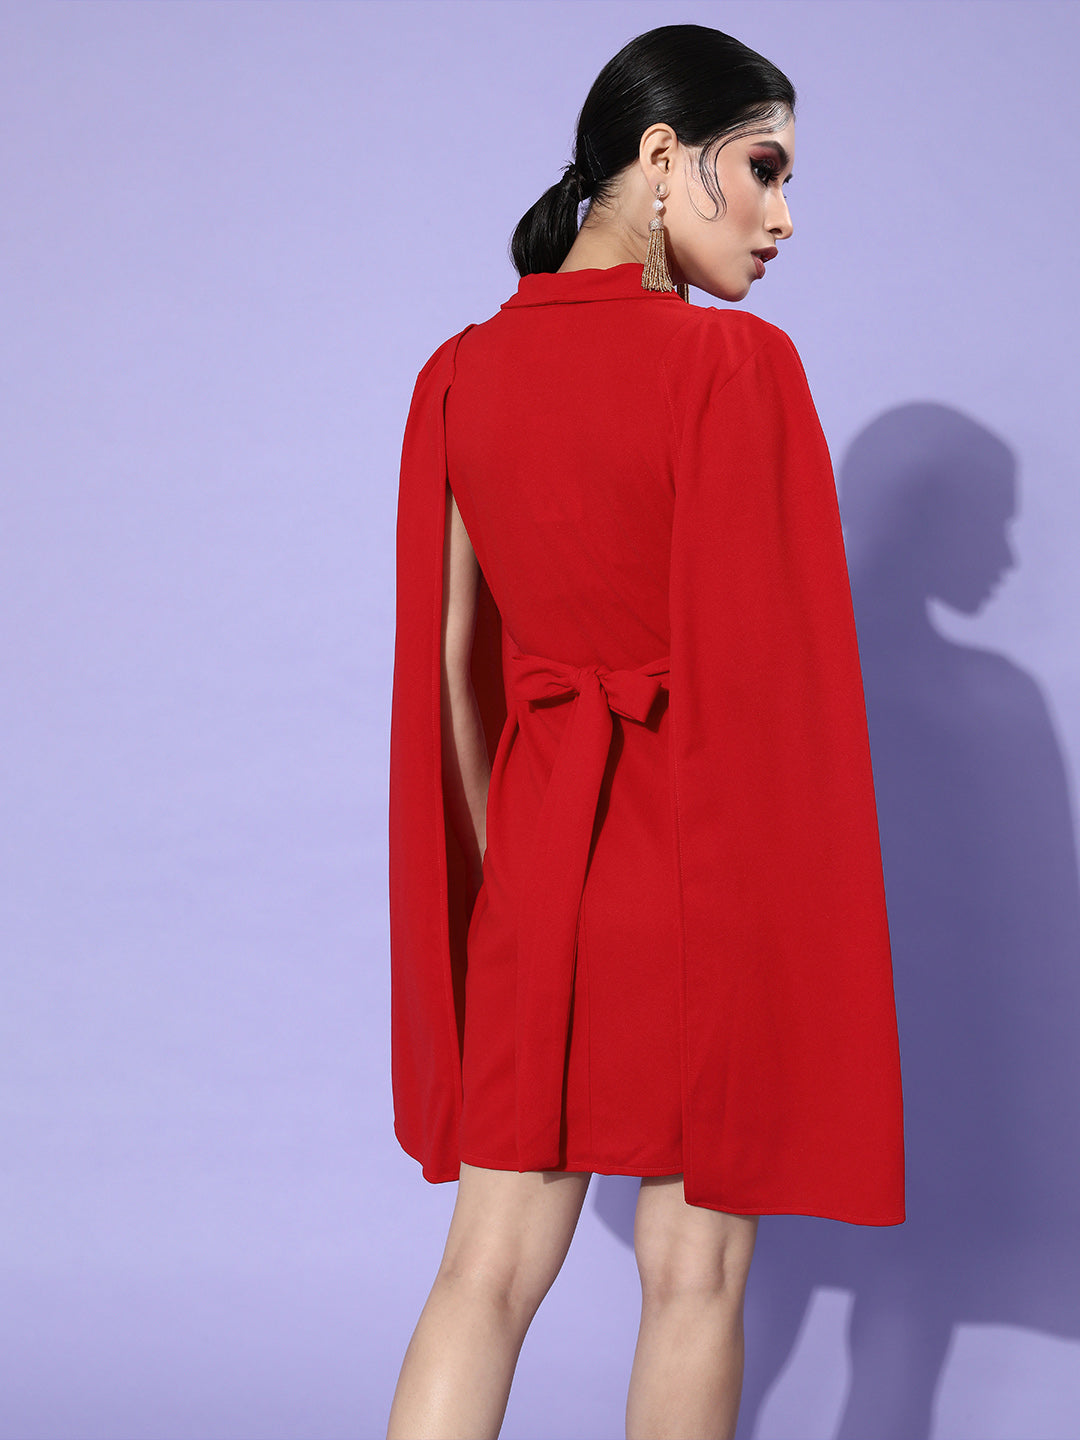 Athena Red Scuba Blazer Dress - Athena Lifestyle